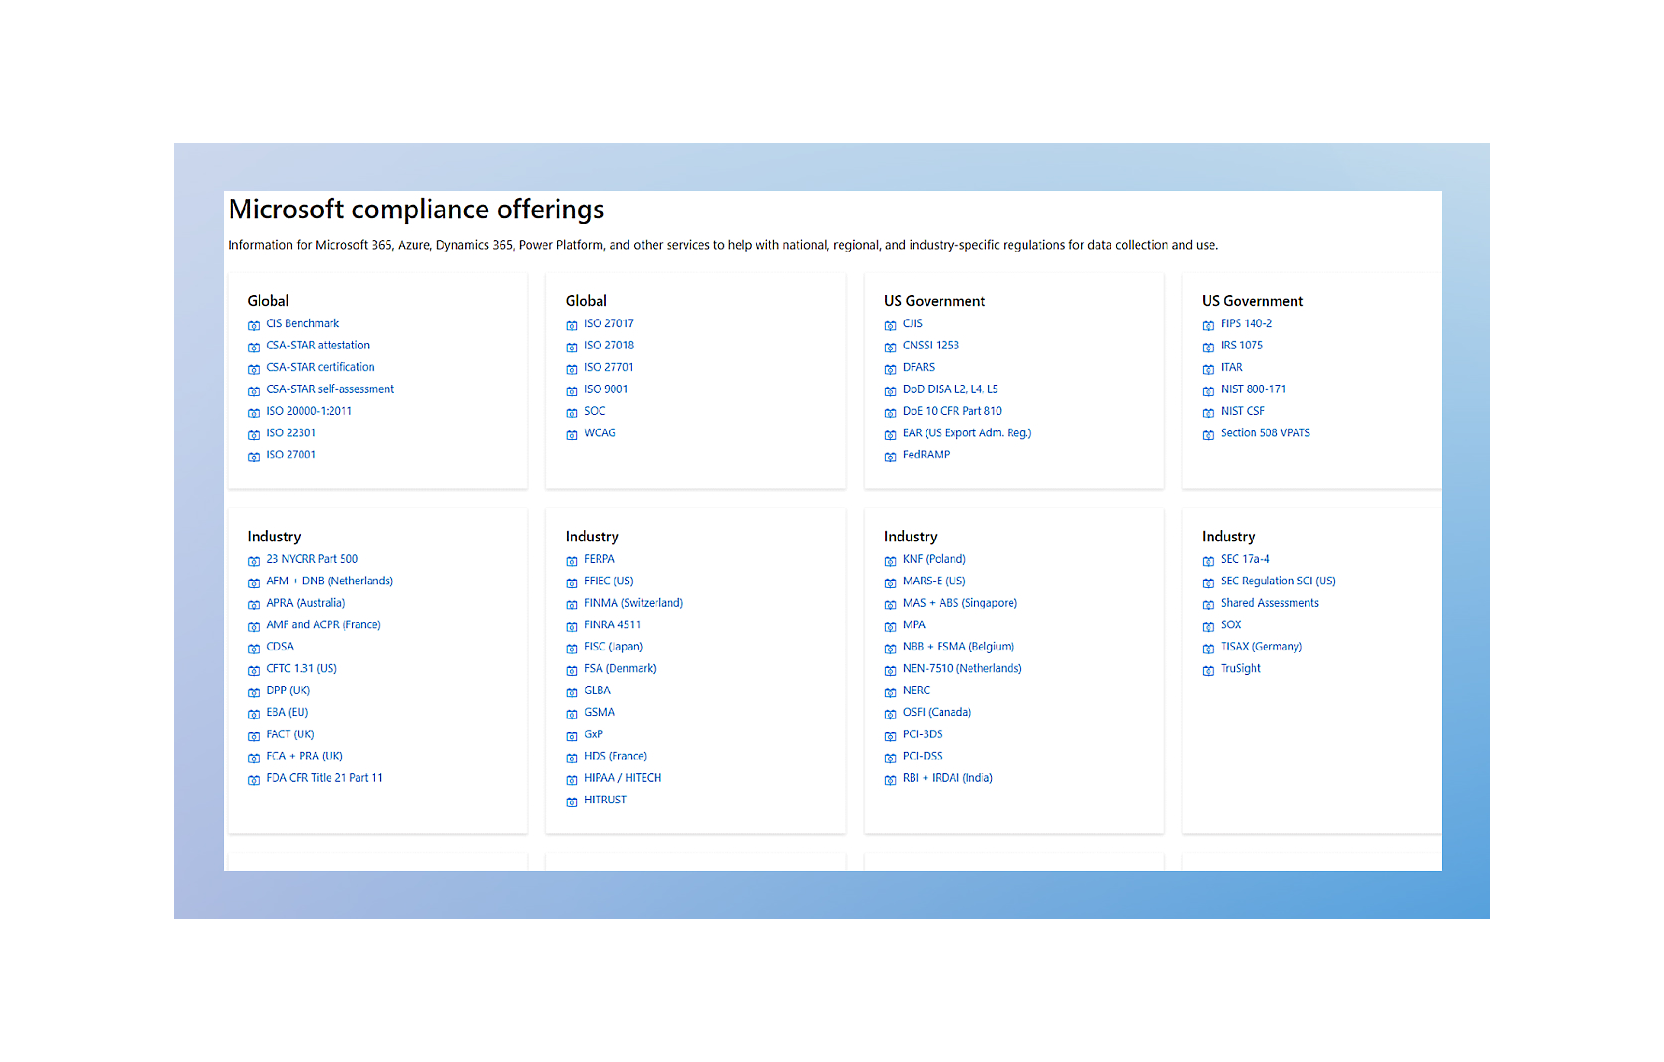 Screenshot di una schermata che mostra le varie offerte Microsoft per la conformità